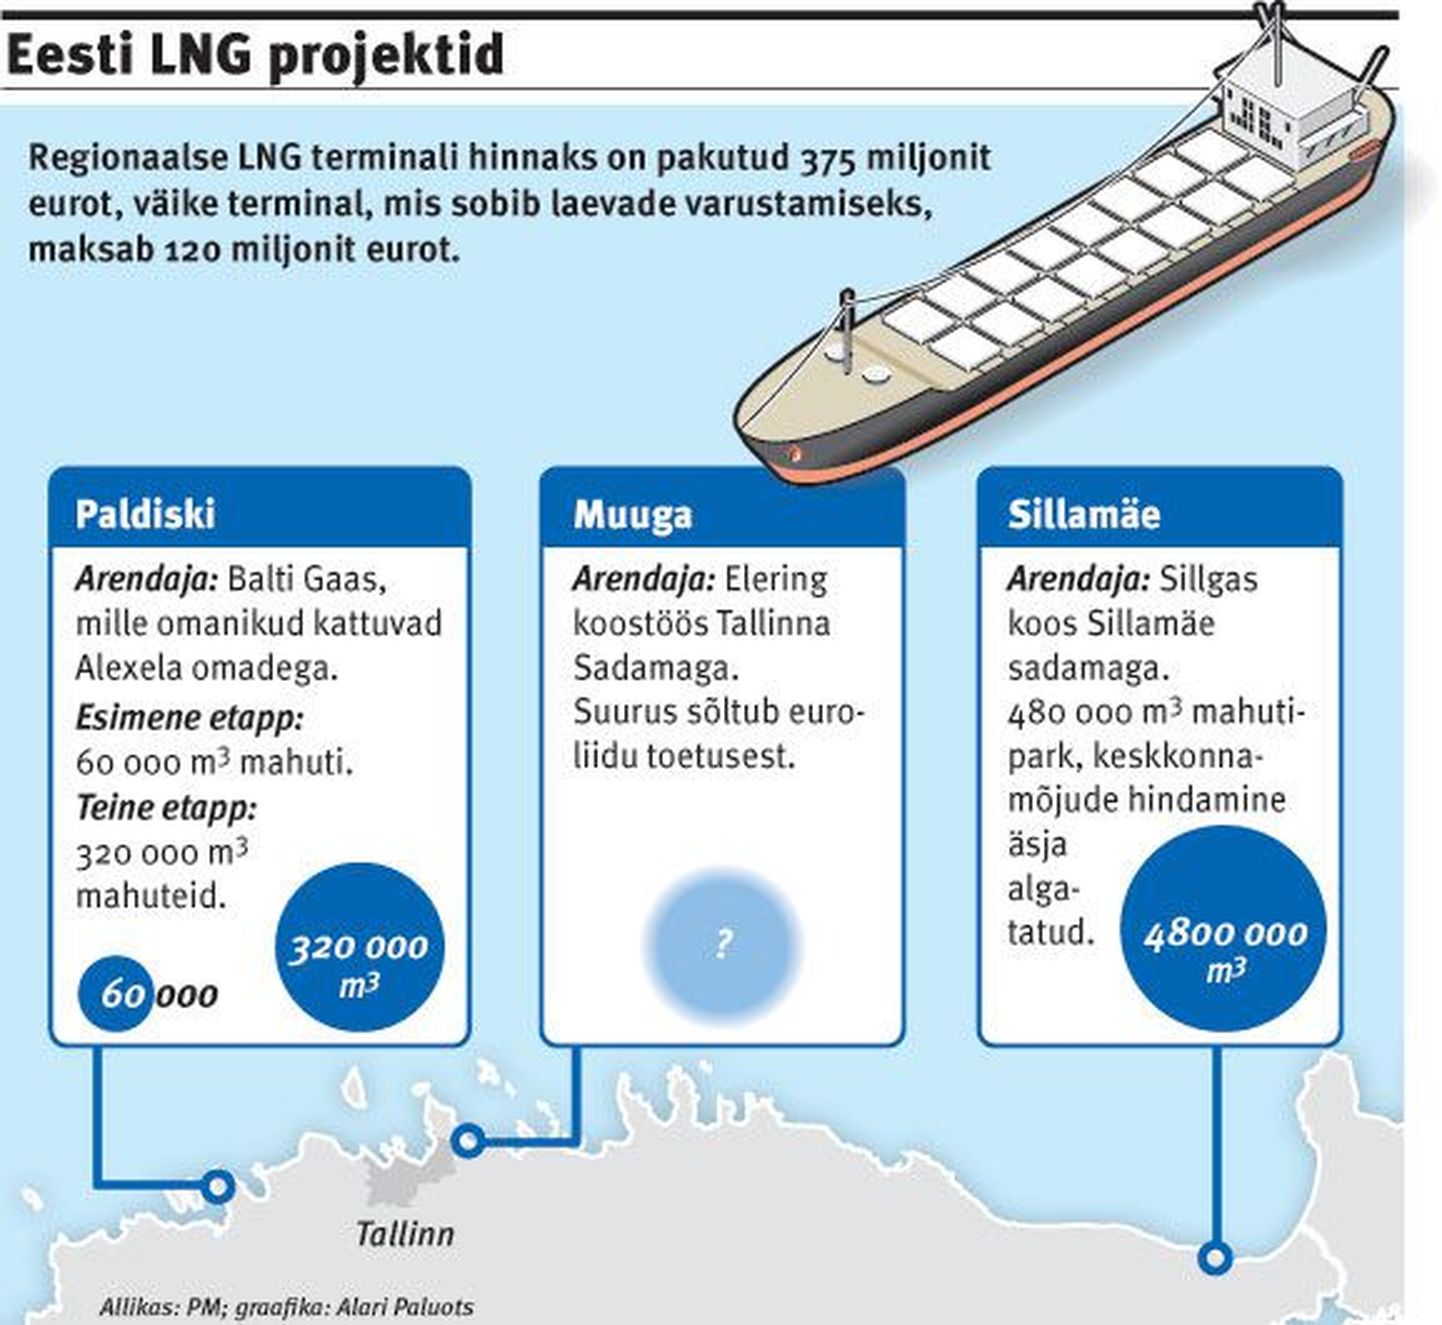 Эстонские LNG-проекты. Сжиженный газ считается наиболее перспективным видом топлива для морского и автомобильного транспорта